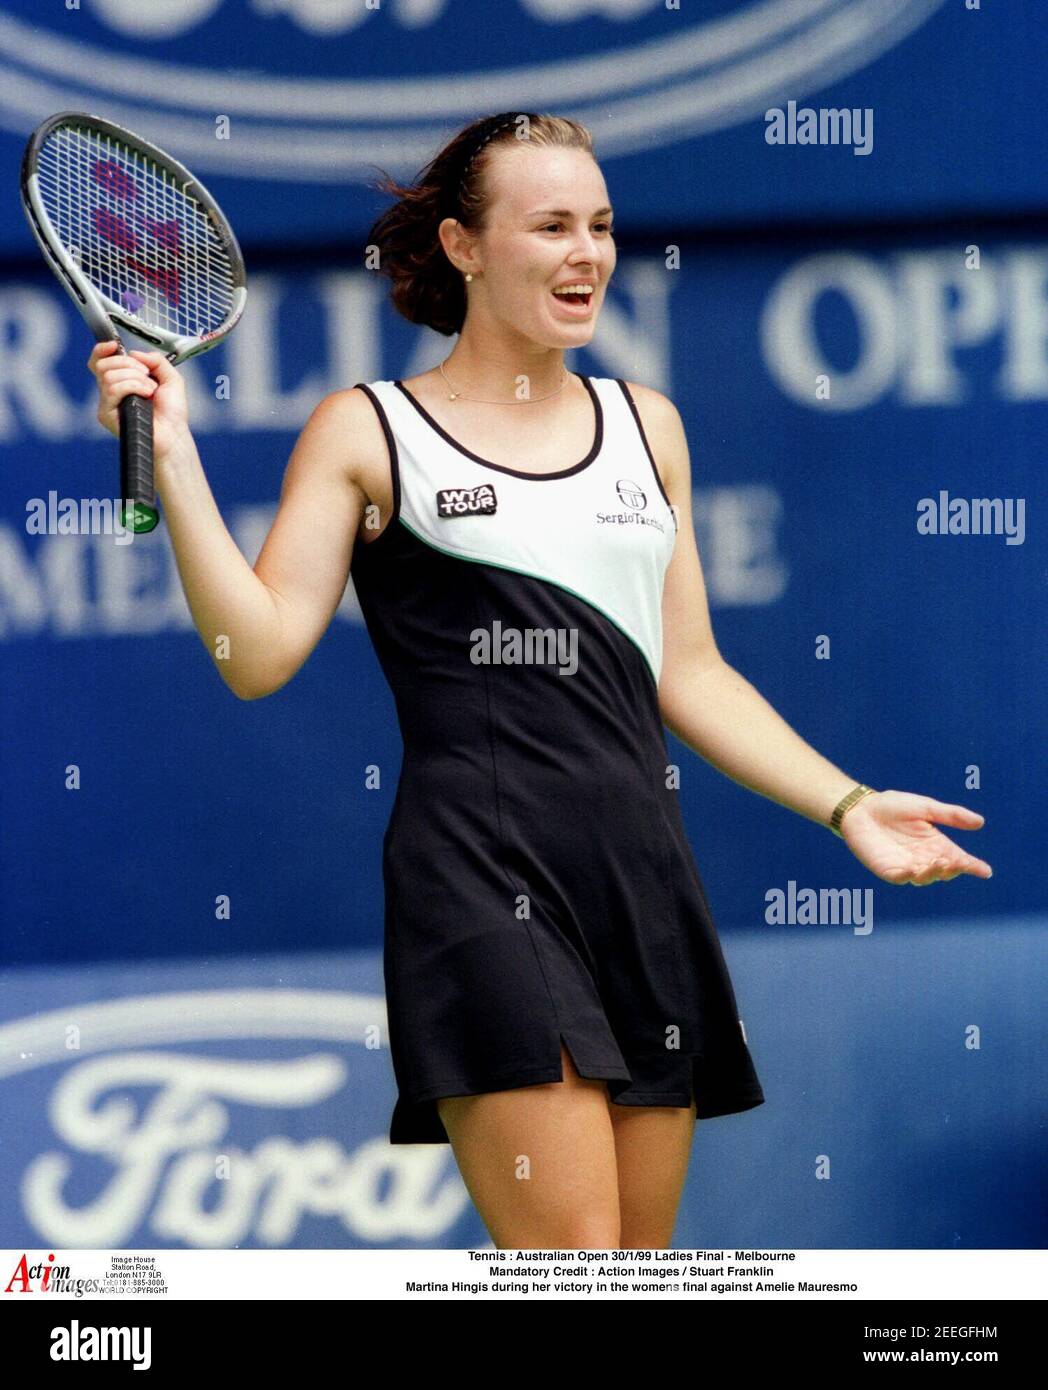 Tennis : Open d'Australie 30/1/99 Dames final - Melbourne crédit  obligatoire : Images d'action / Stuart Franklin Martina Hingis lors de sa  victoire dans la finale des femmes contre Amelie Mauresmo Photo Stock -  Alamy